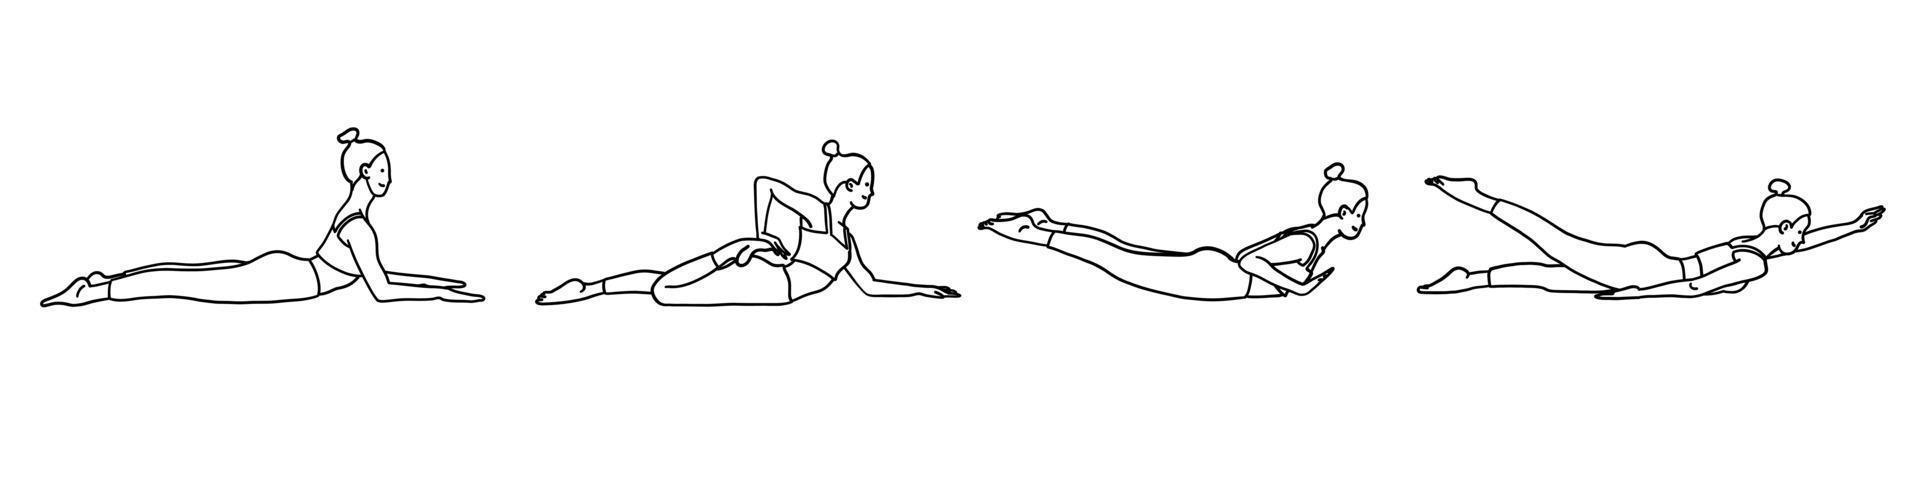 flexibilitet yoga poser samling. kvinna, lady, kvinna, flicka. meditation, pilates, mental hälsa, Träning Gym. vektor illustration i tecknad serie översikt klotter stil isolerat på vit bakgrund.